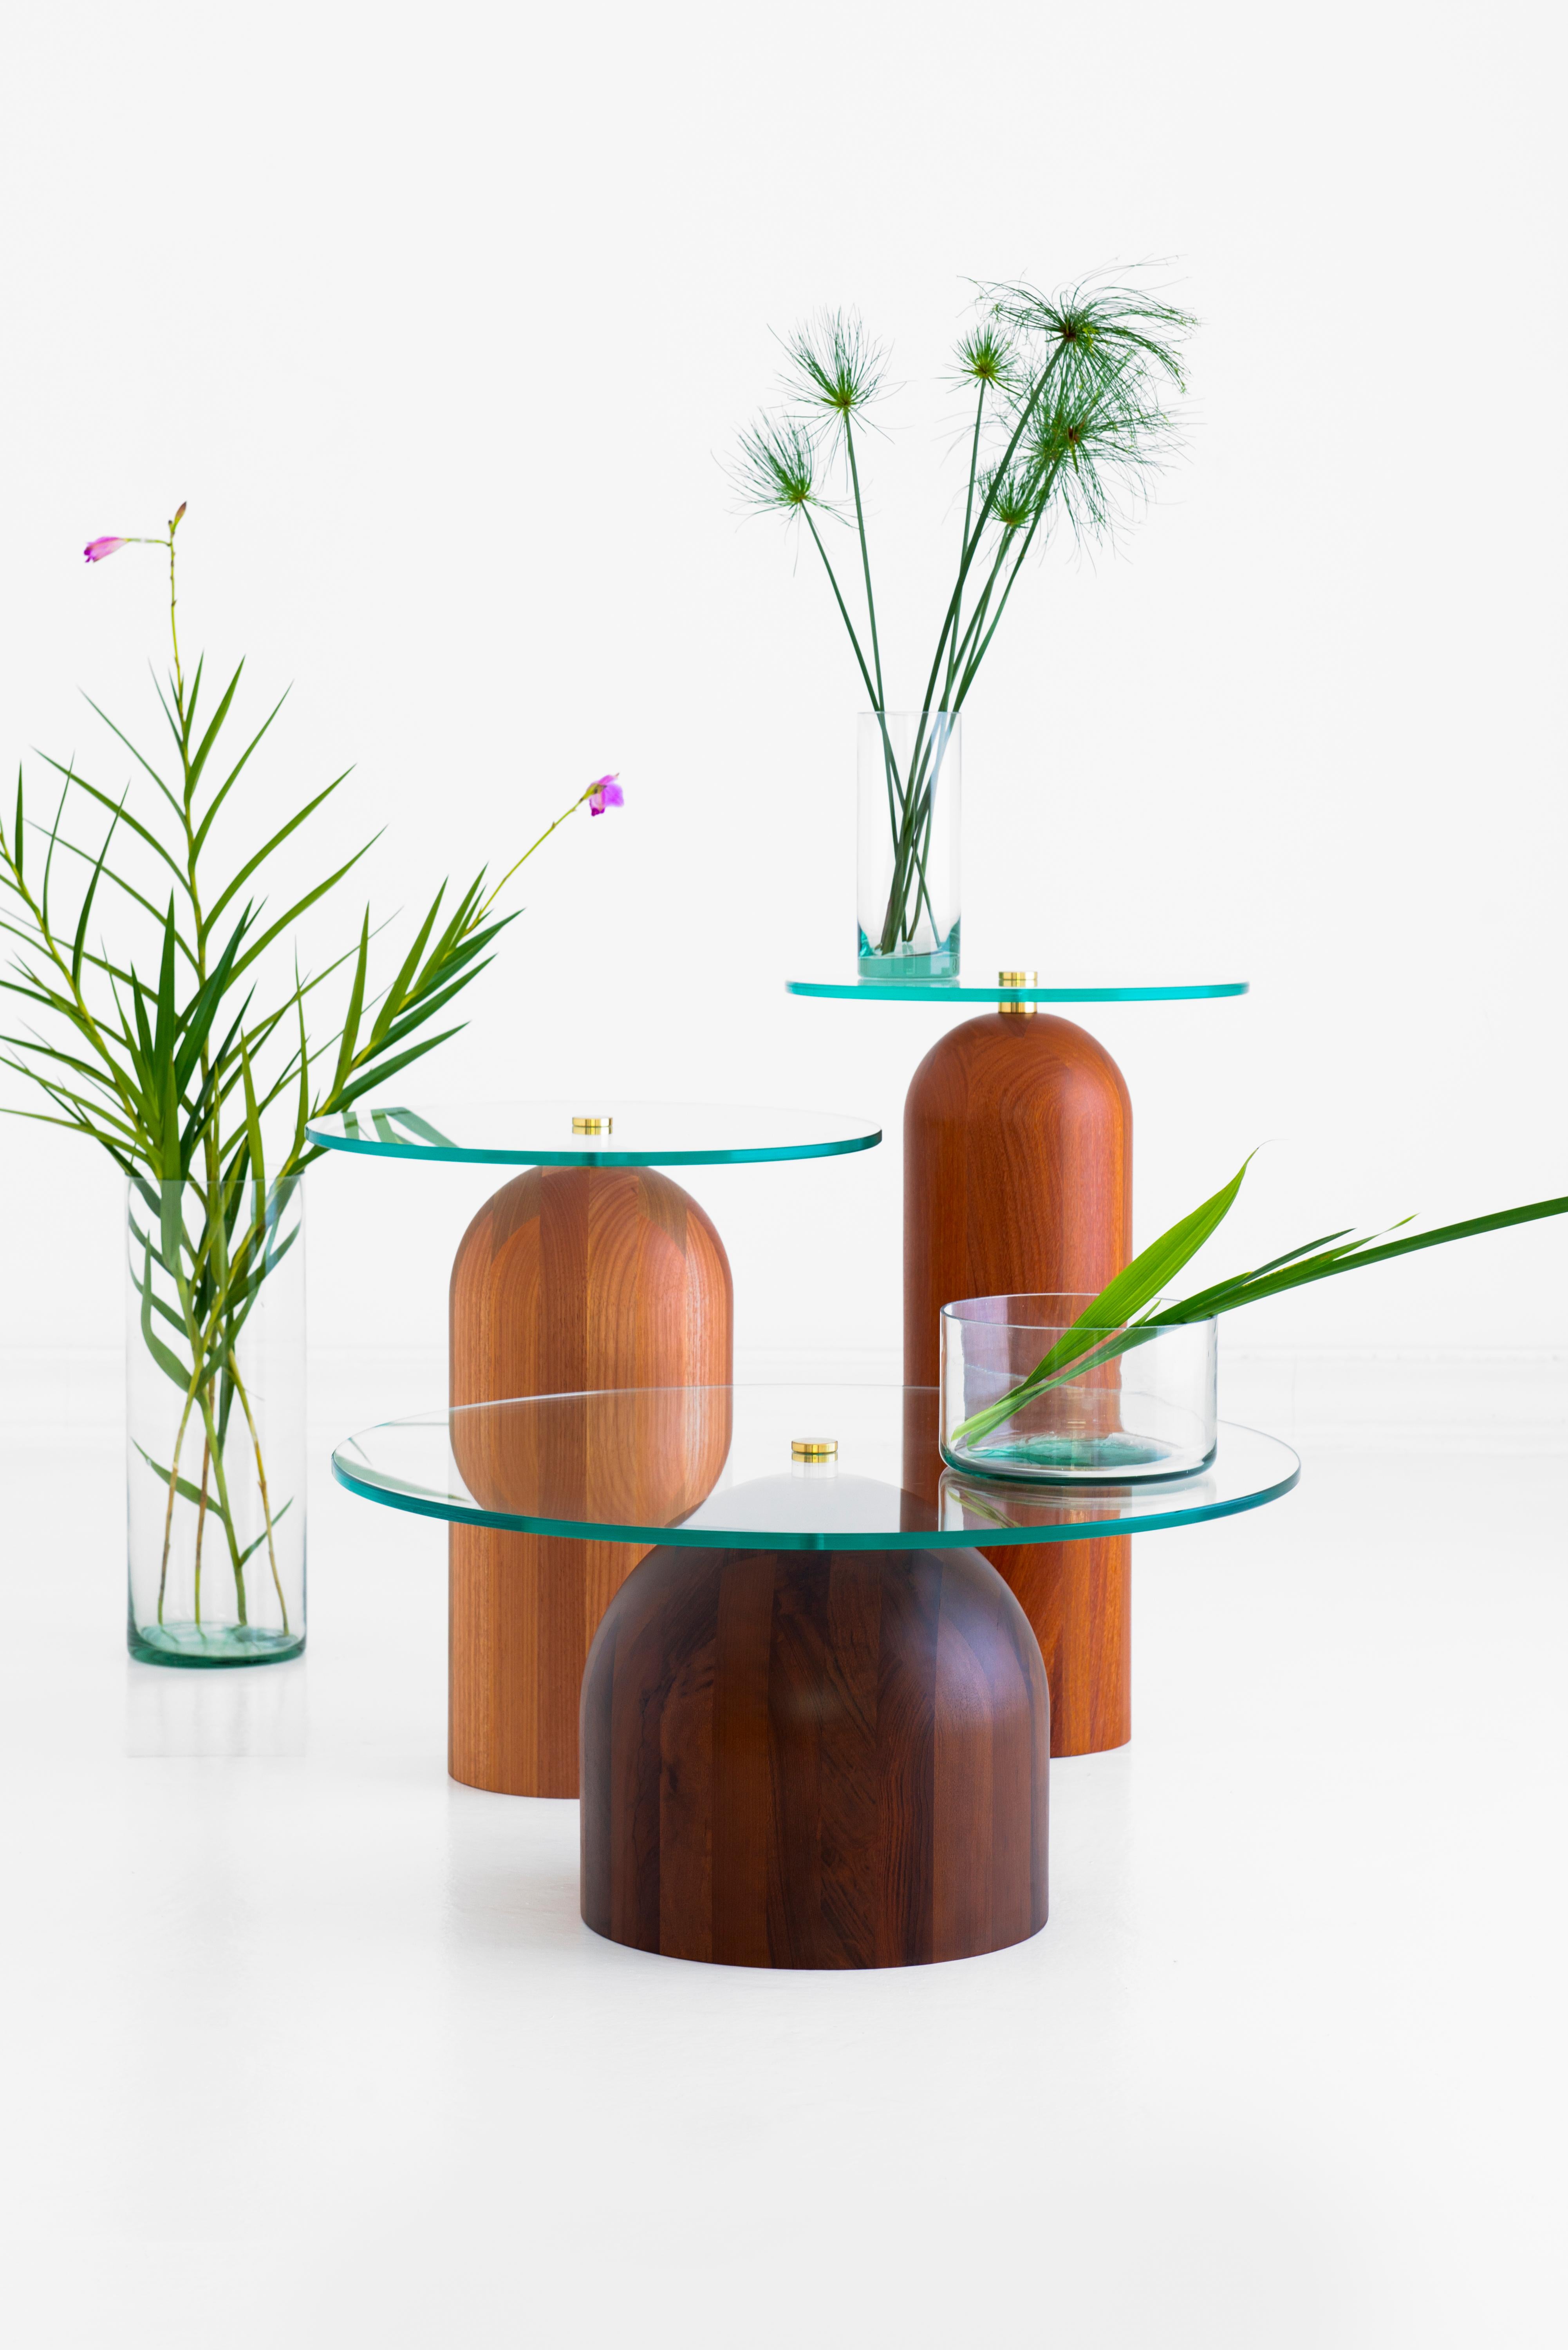 Trio of Side Tables, Leandro Garcia, Contemporary Brazil Design 2